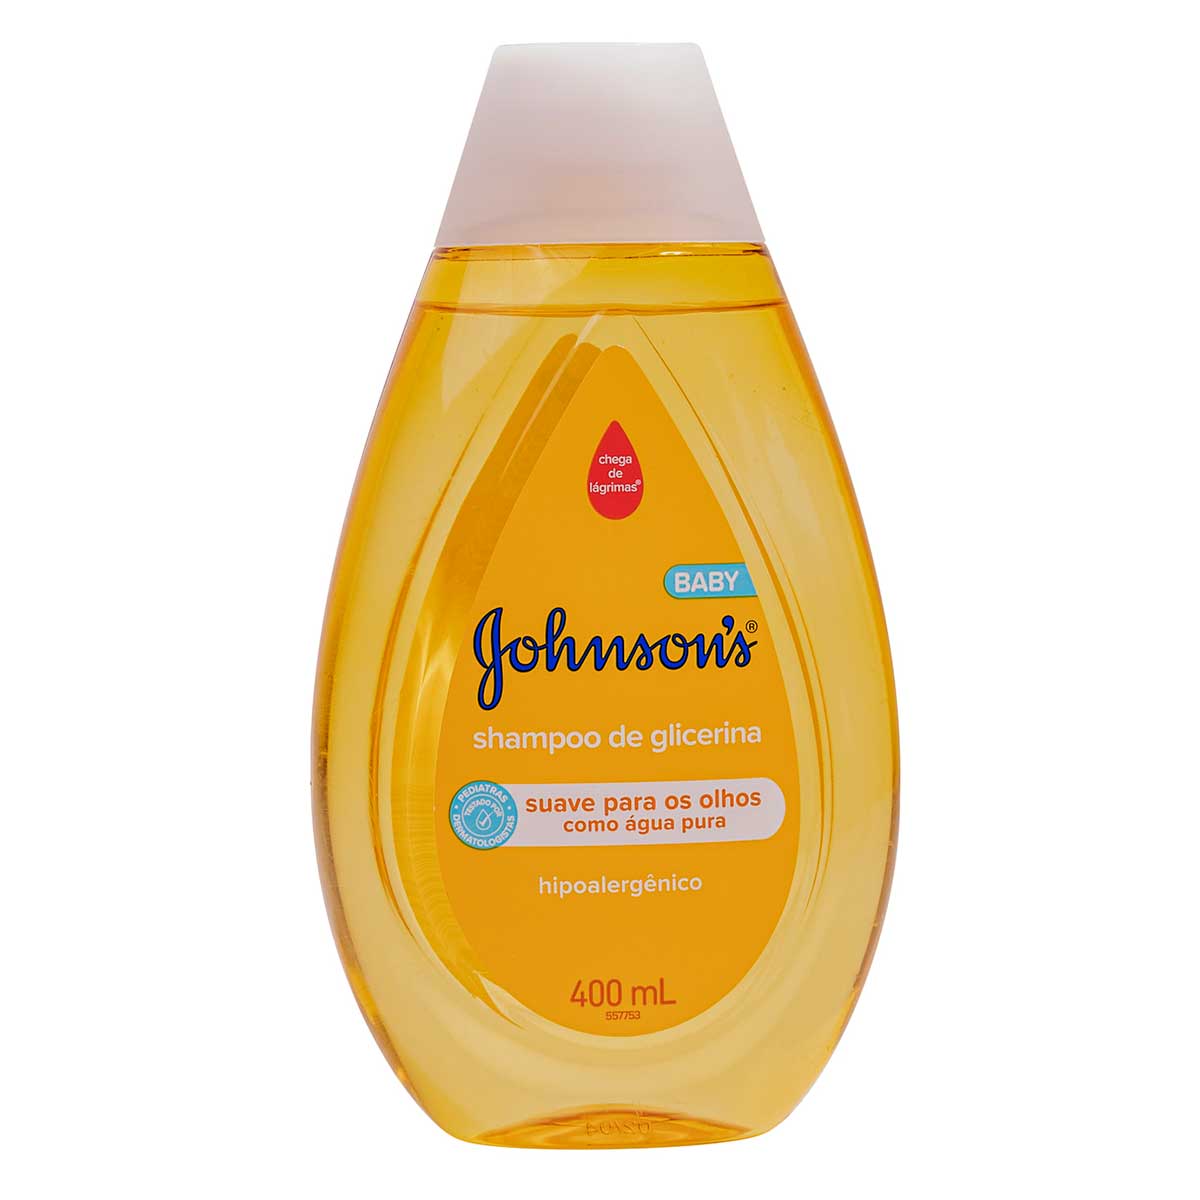 shampoo-para-bebe-johnson's-baby-glicerina-400ml-1.jpg